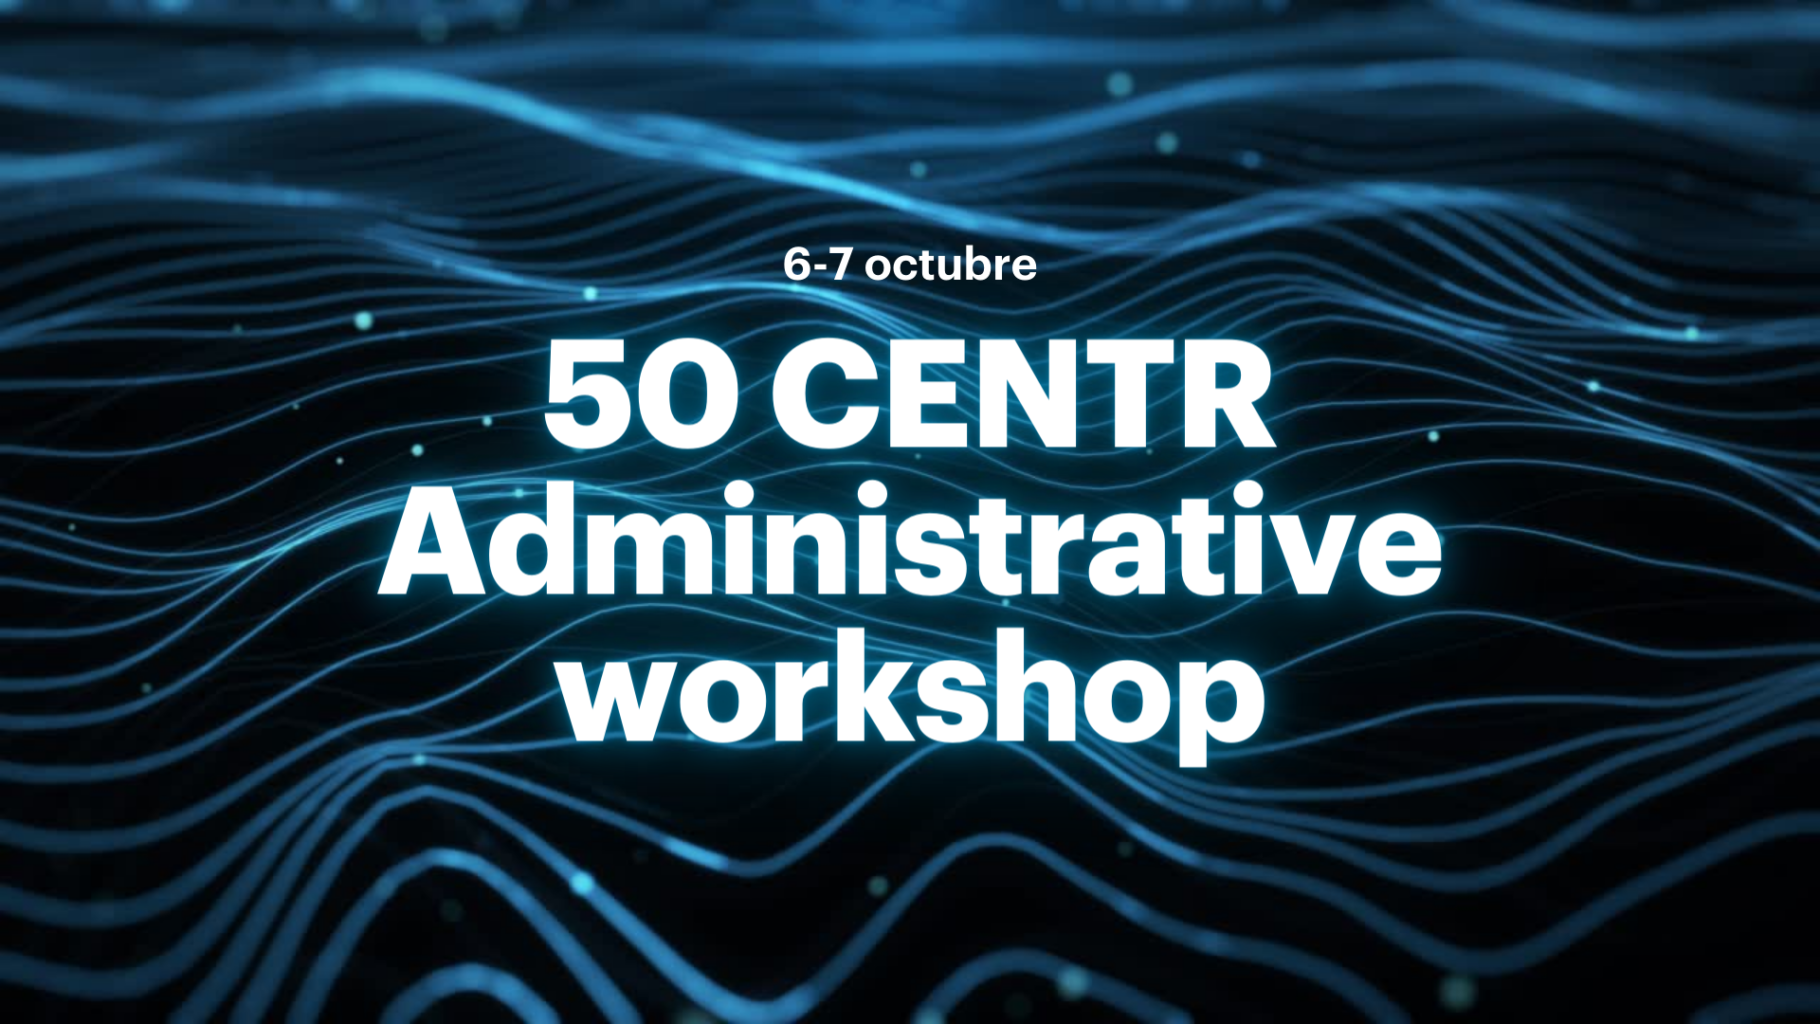 50 CENTR Administrative workshop